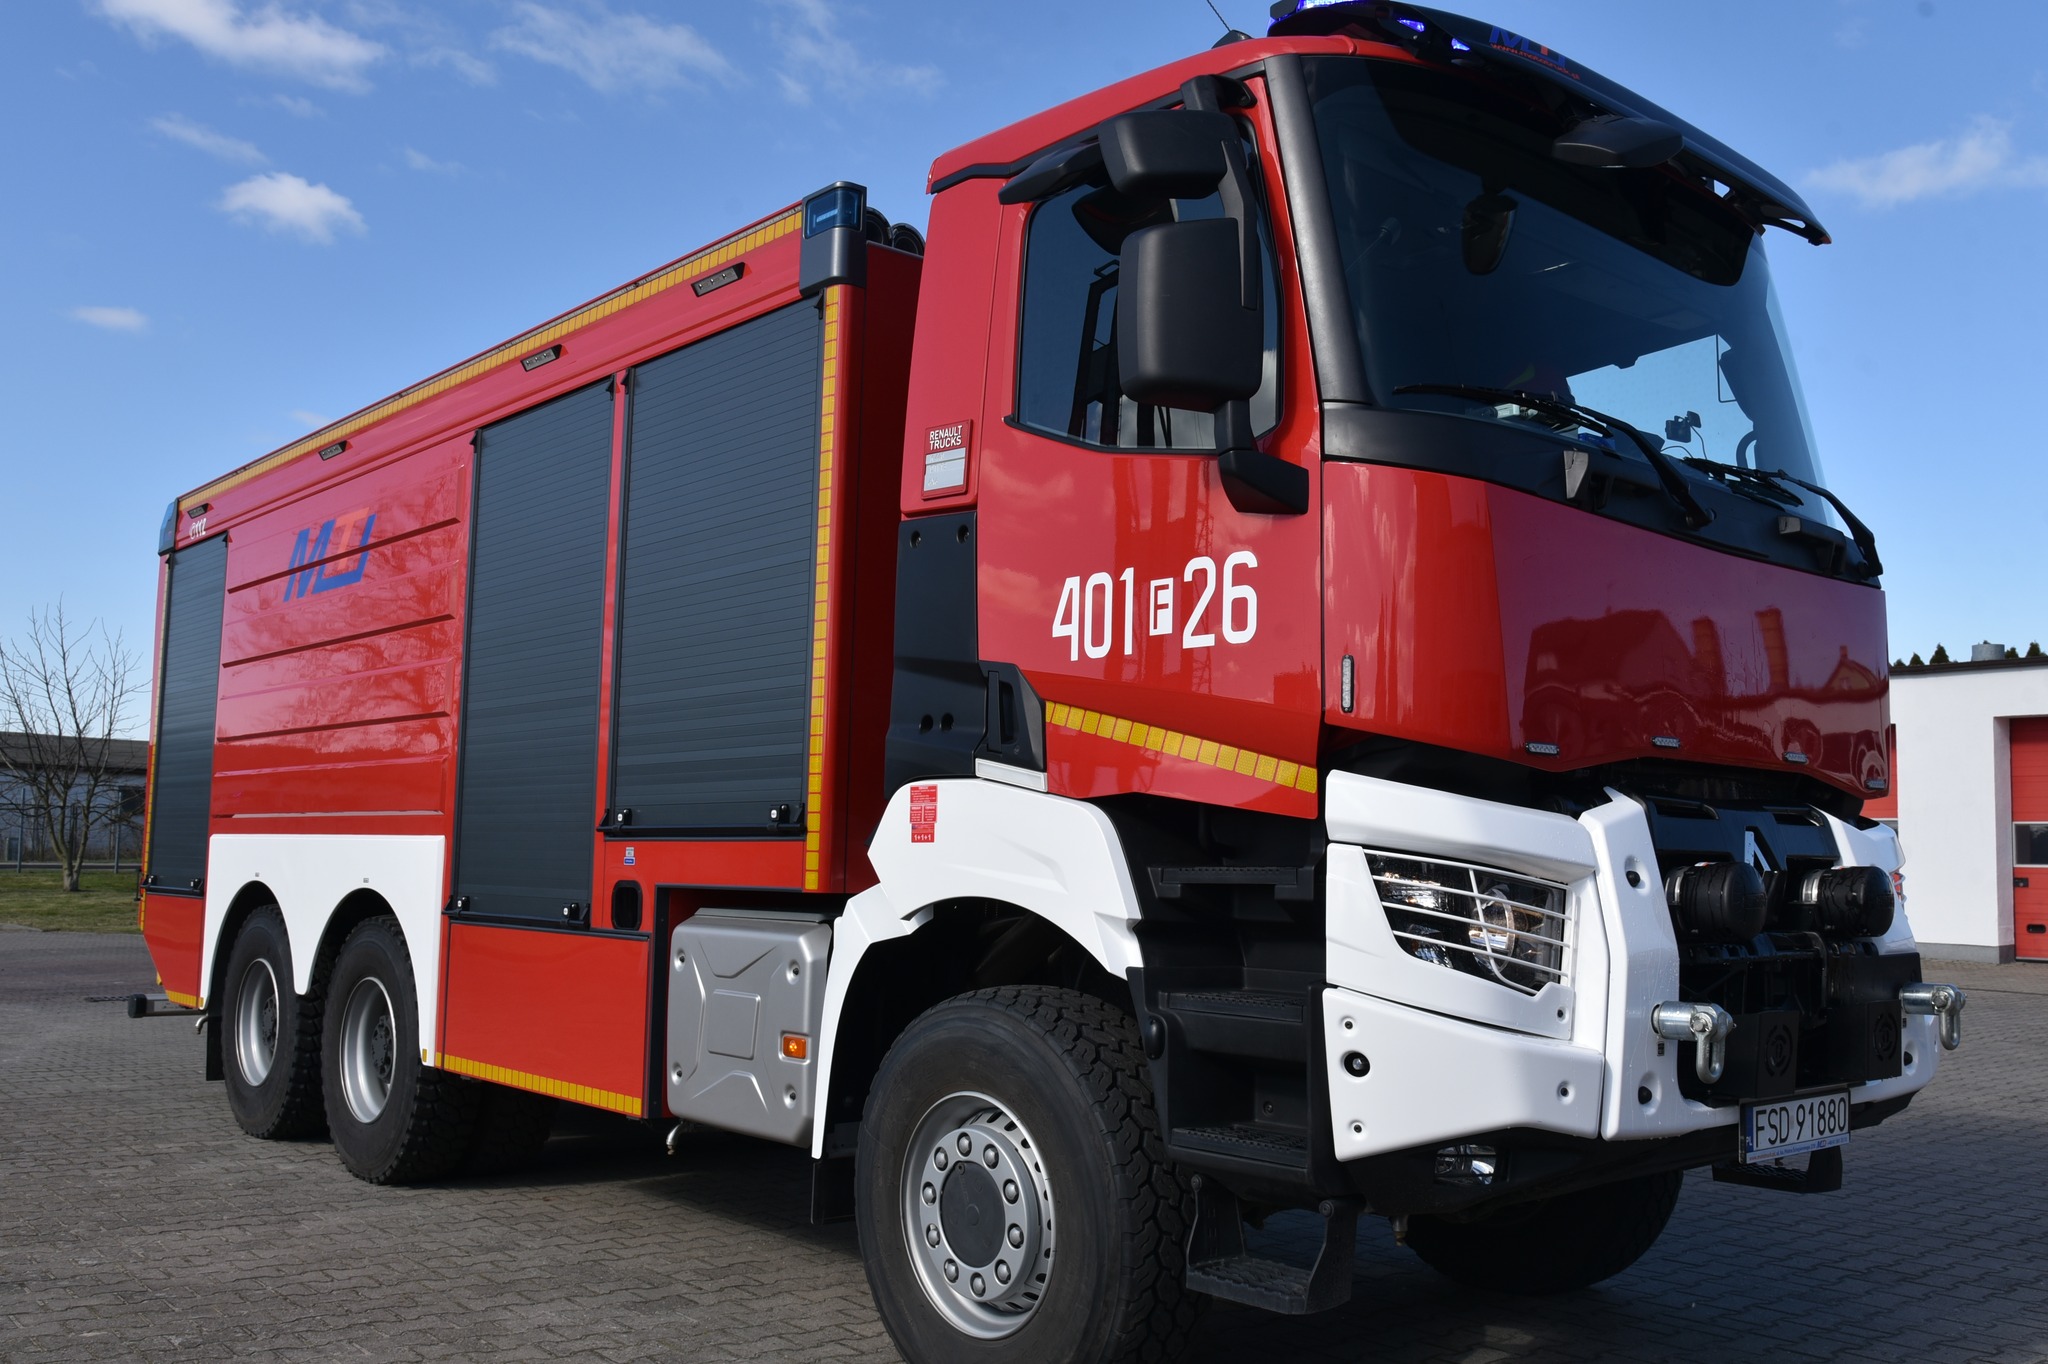 Strażacy ze Strzelec Krajeńskich zyskali nowy specjalistyczny wóz za 1,2 miliona zł | FOTO